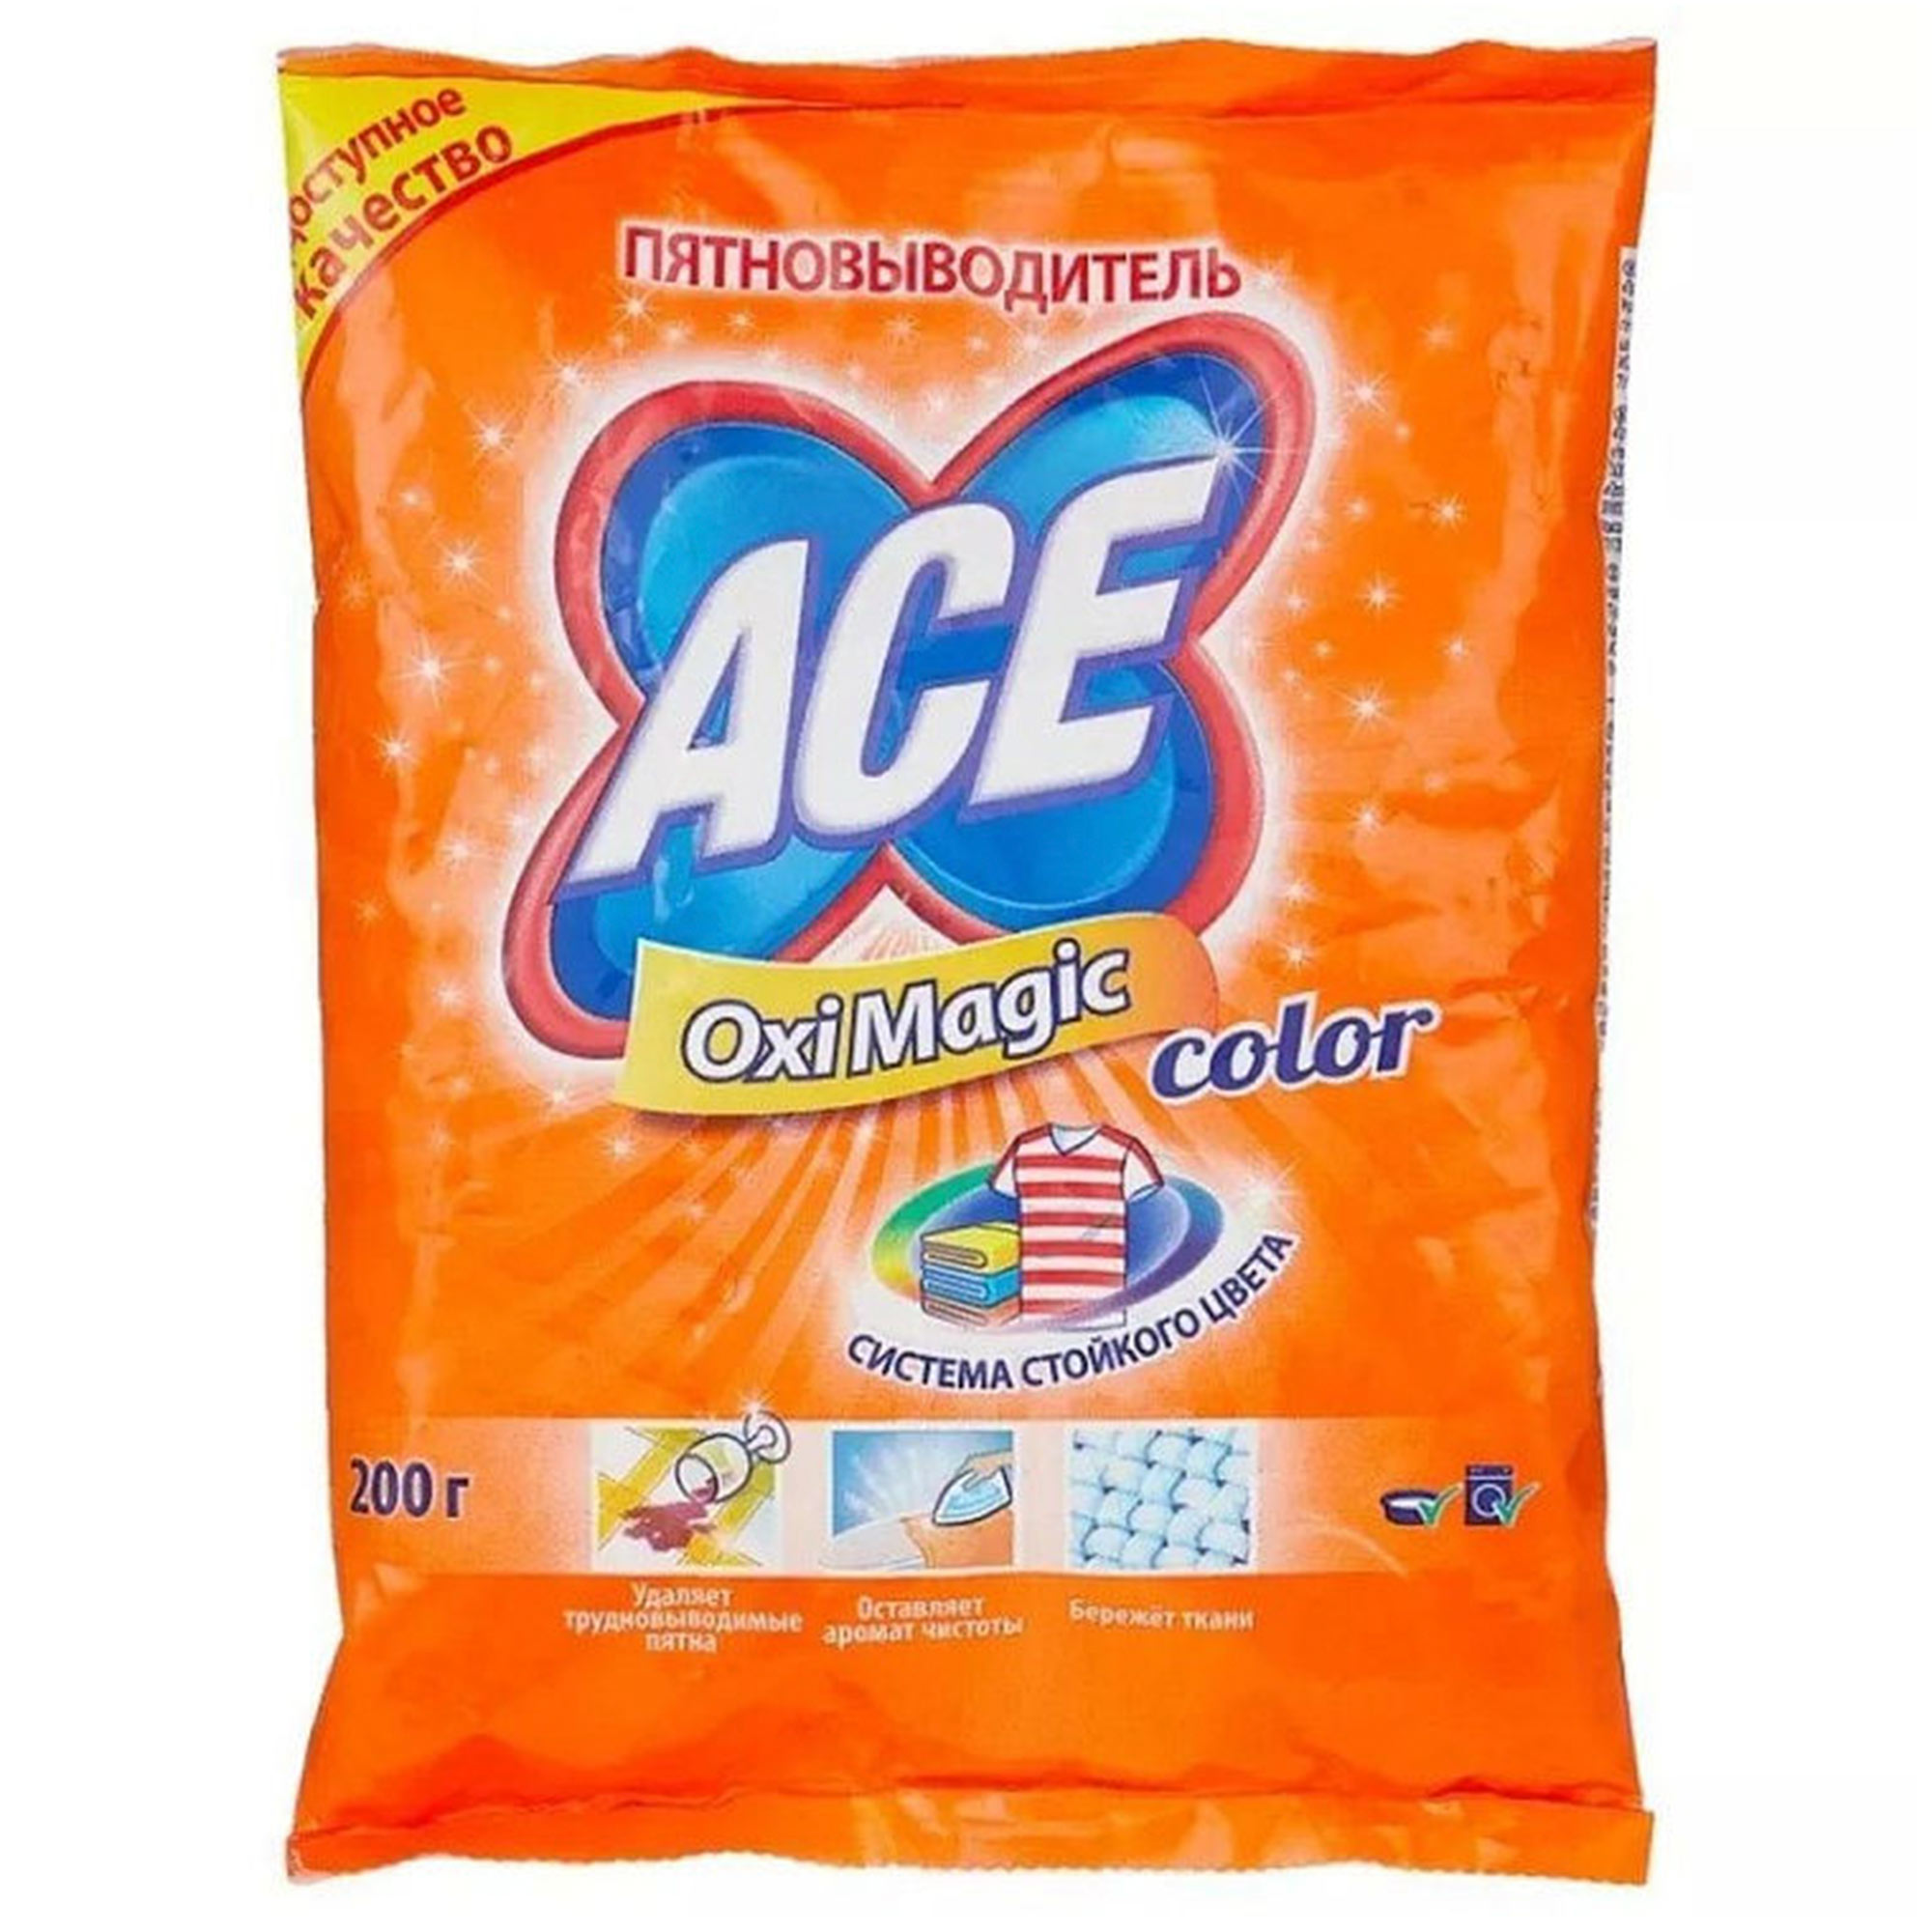   / Ace Oxi Magic Color -      200 